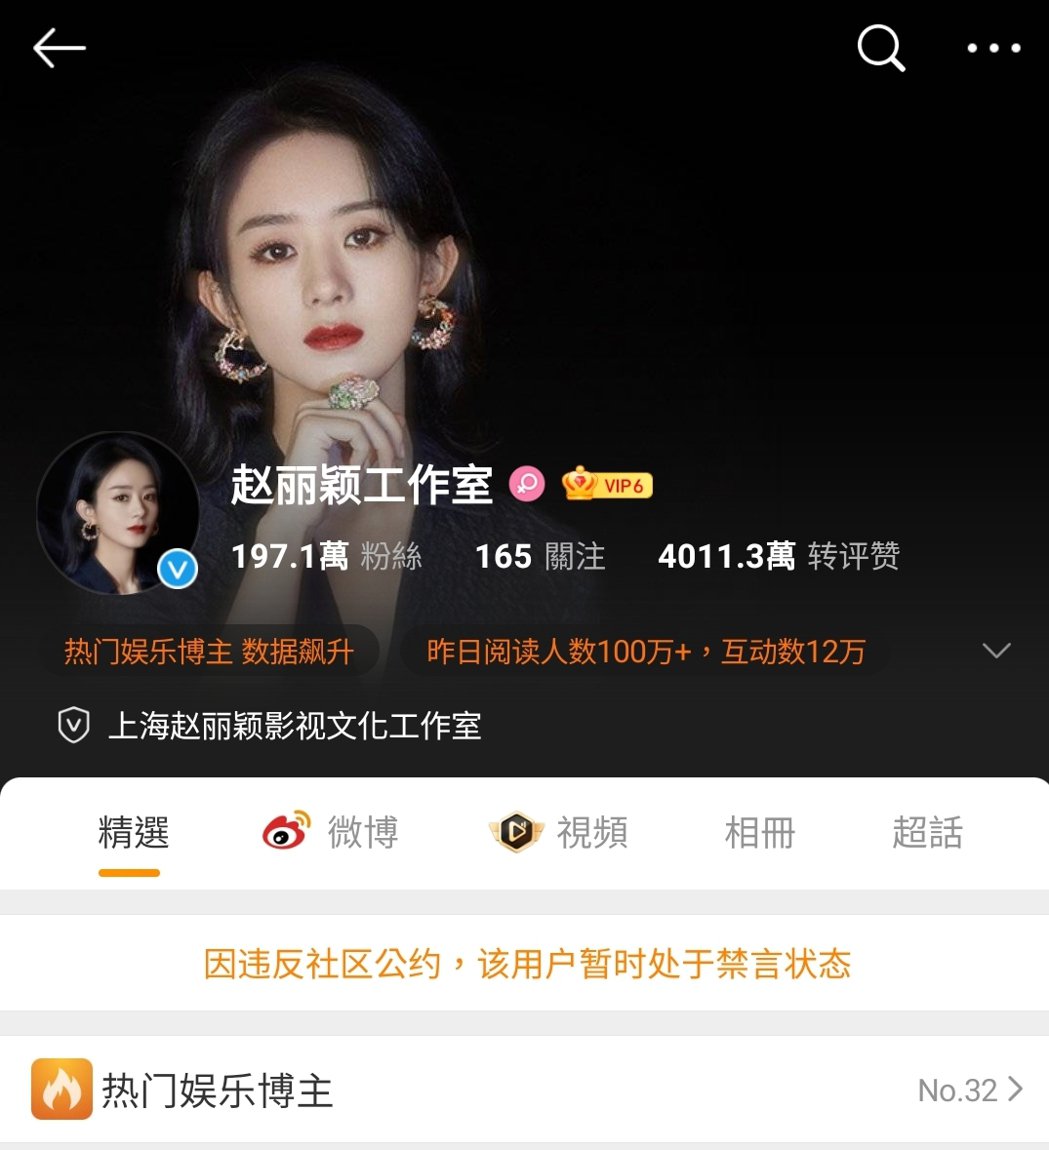 孤独者赵丽颖、王一博粉丝网路开战工作室「管理不当」微博惨遭禁言